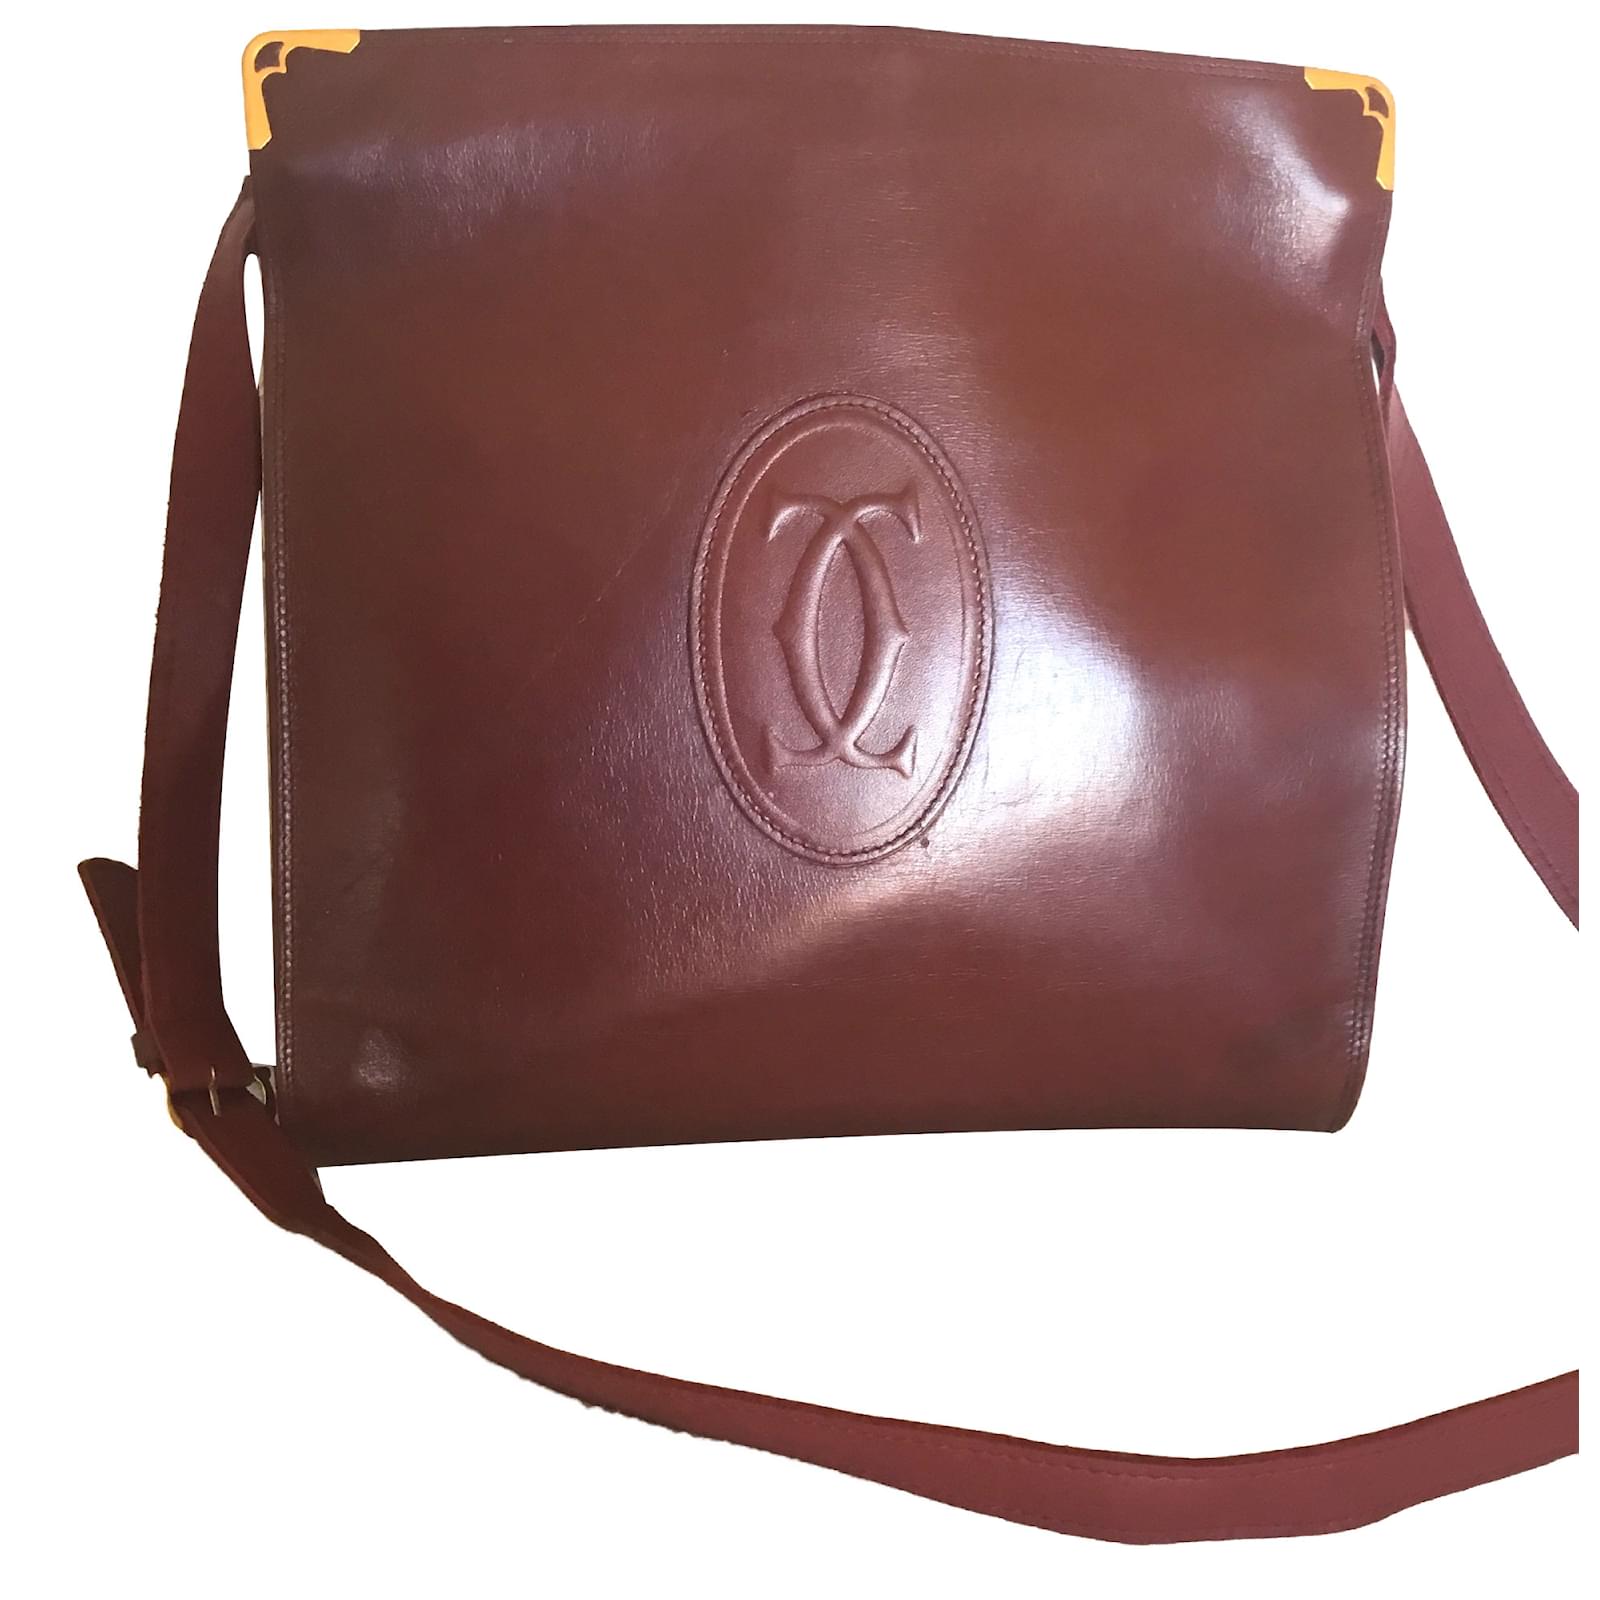 Miu Miu Black Leather shoulder Handbag Vintage Purse Bag #1 | eBay